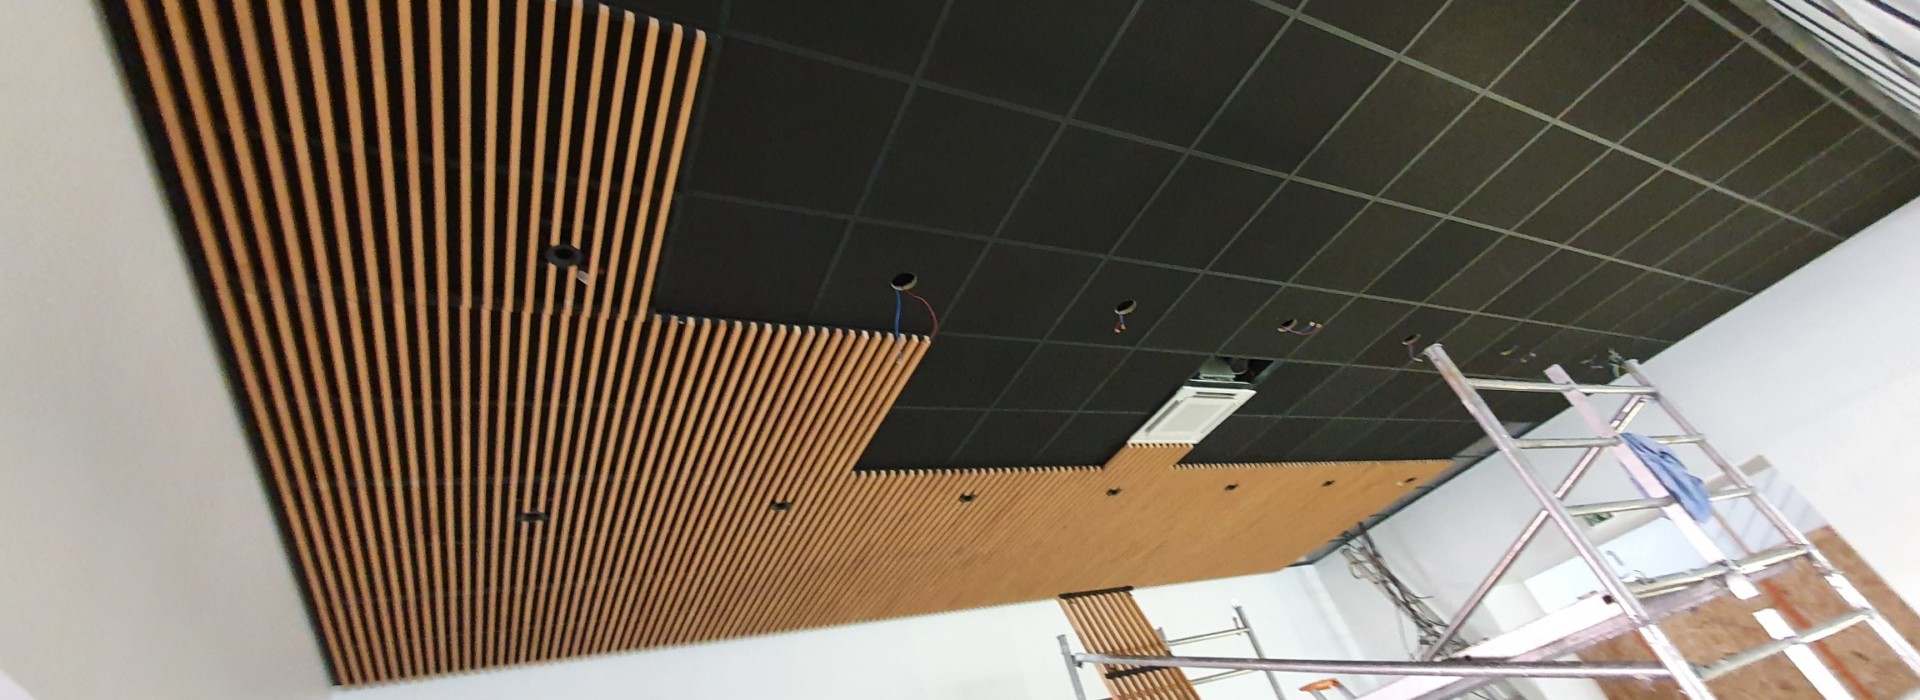 Habillage bois d'un plafond acoustique